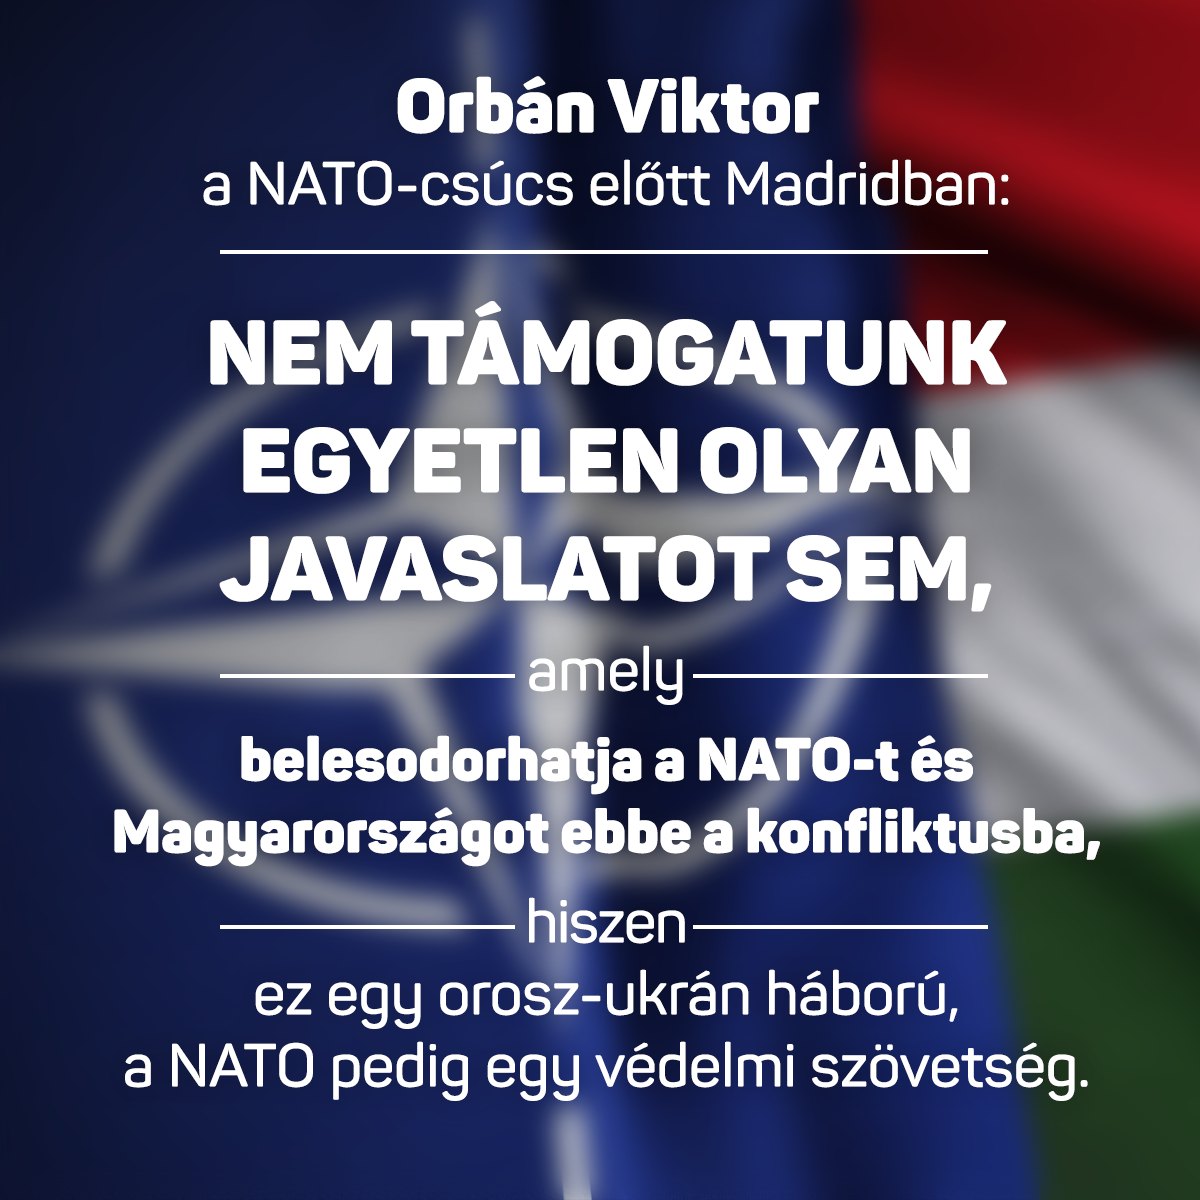 Orbán Viktor a NATO-csúcs kapcsán kifejtette: nem támogatunk egyetlen olyan javaslatot sem, amely belesodorhatja a NATO-t és Magyarországot ebbe a konfliktusba, hiszen ez egy orosz-ukrán háború, a NATO pedig egy védelmi szövetség.